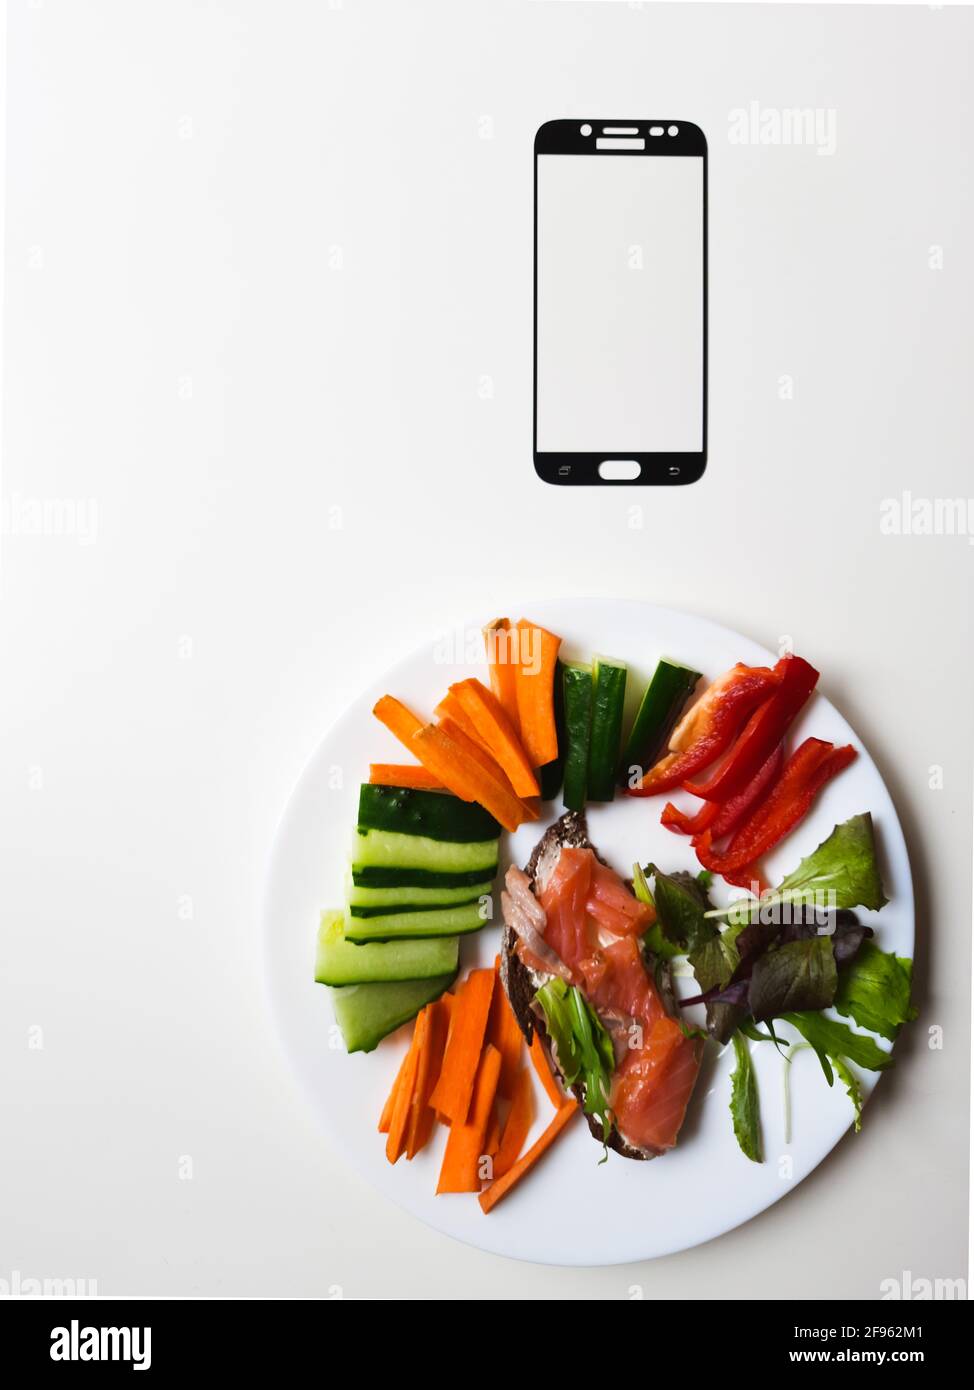 marco para smartphone y plato blanco con verduras y salmón mesa blanca Foto de stock